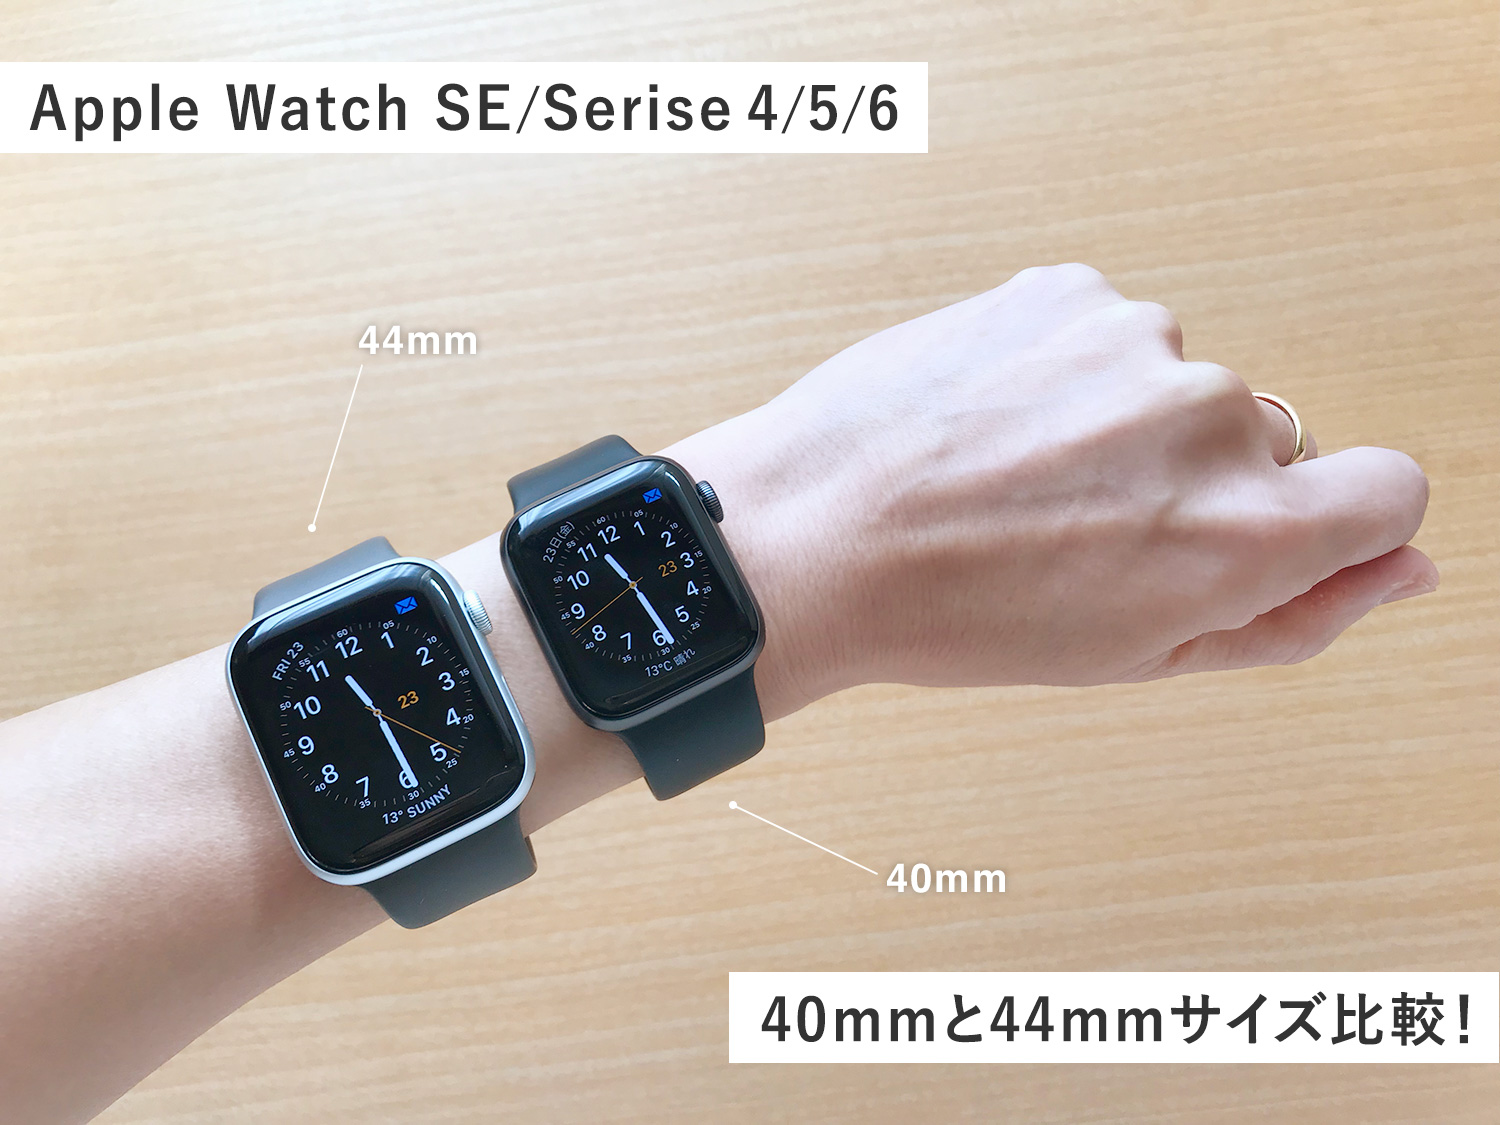 【Apple Watch】40mmと44mmサイズ比較！女性はどちらが使いやすい？両方着けてみた感想(SE,Series 4/5/6